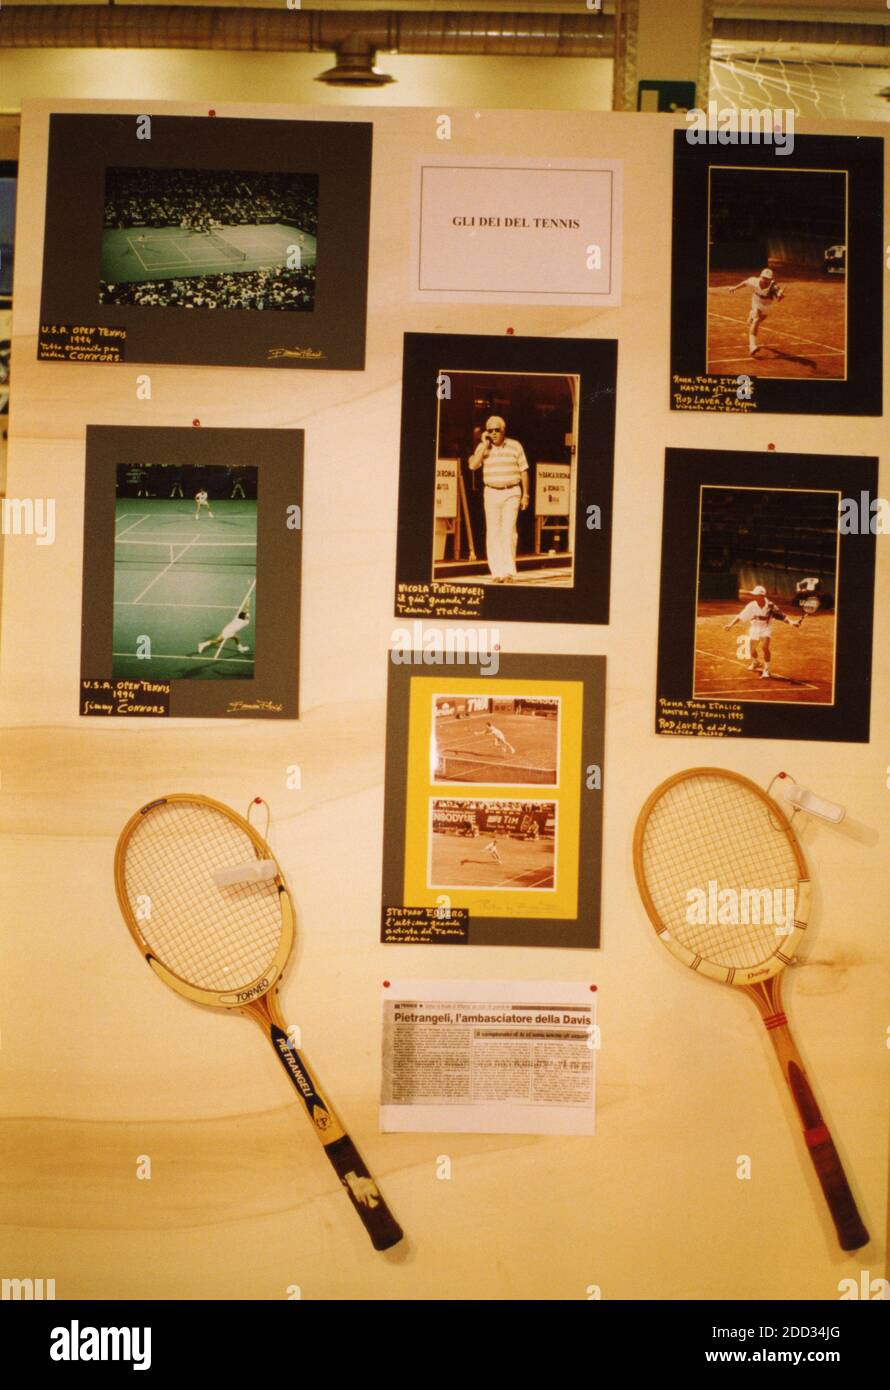 Recuerdos de campeones de tenis, Italia 2000 Foto de stock